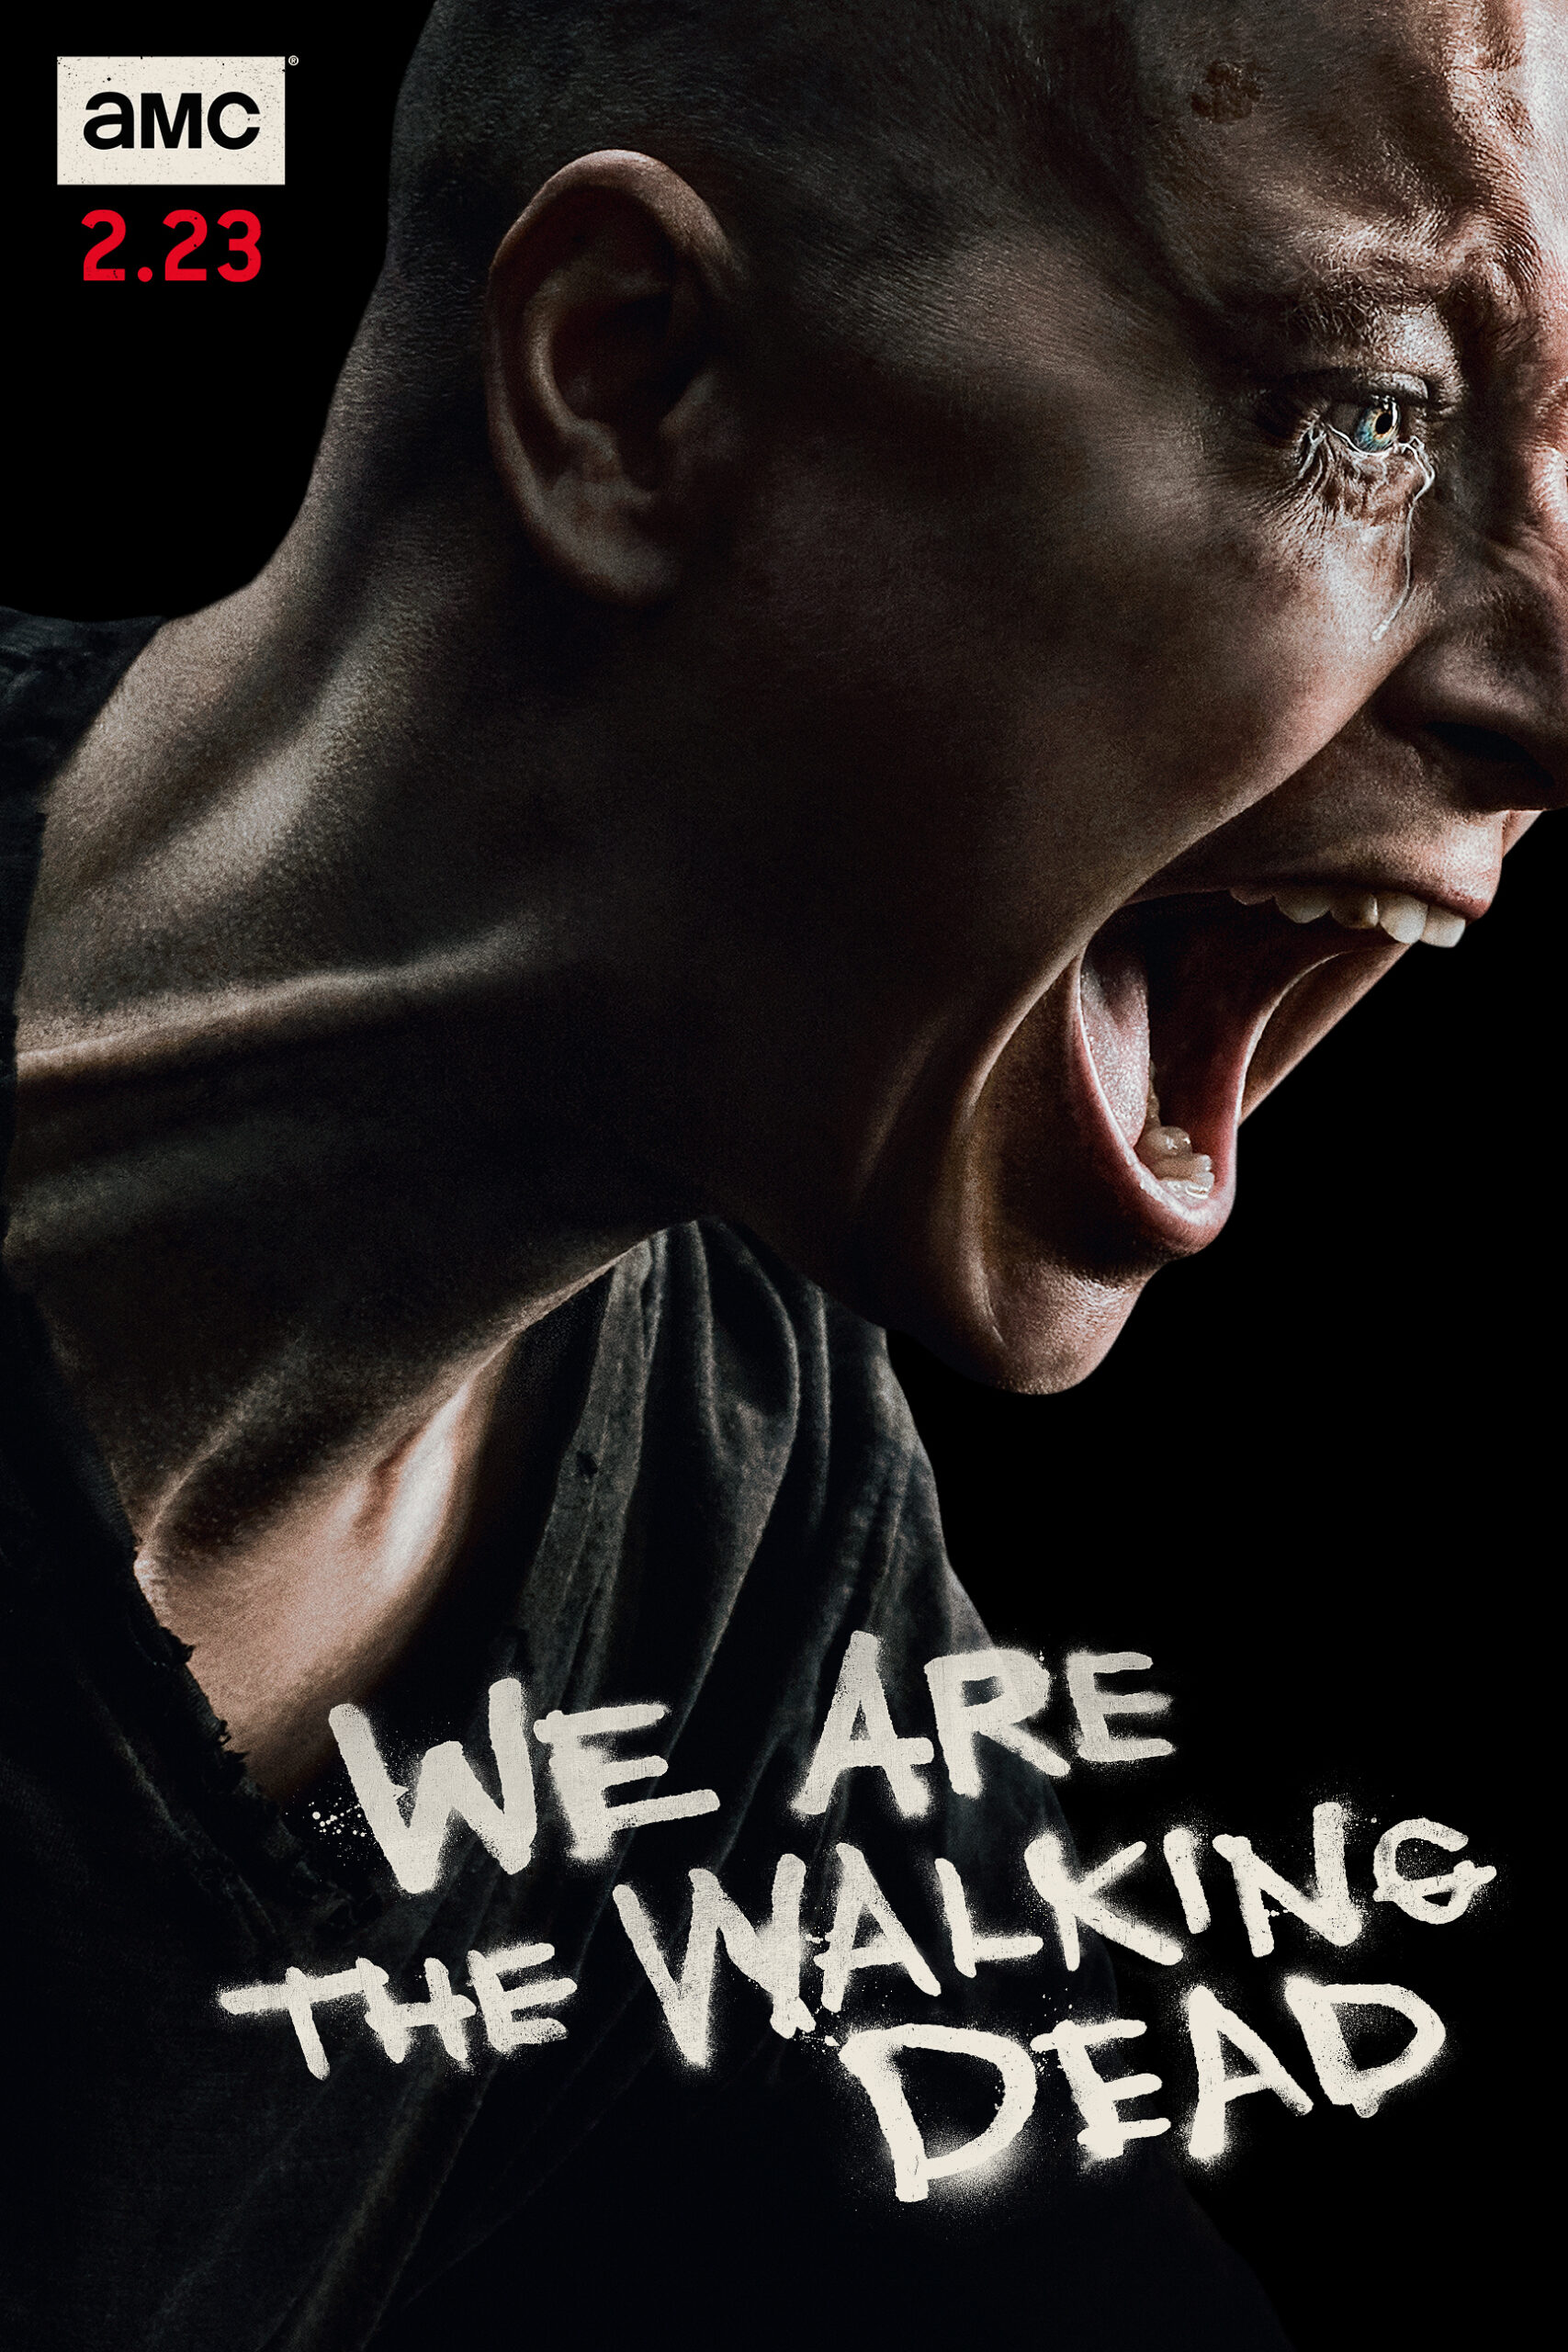 ดูหนังออนไลน์ฟรี The Walking Dead Season 4 EP11 เดอะวอล์กกิงเดด ปี4 ตอนที่11 [[Sub Thai]]